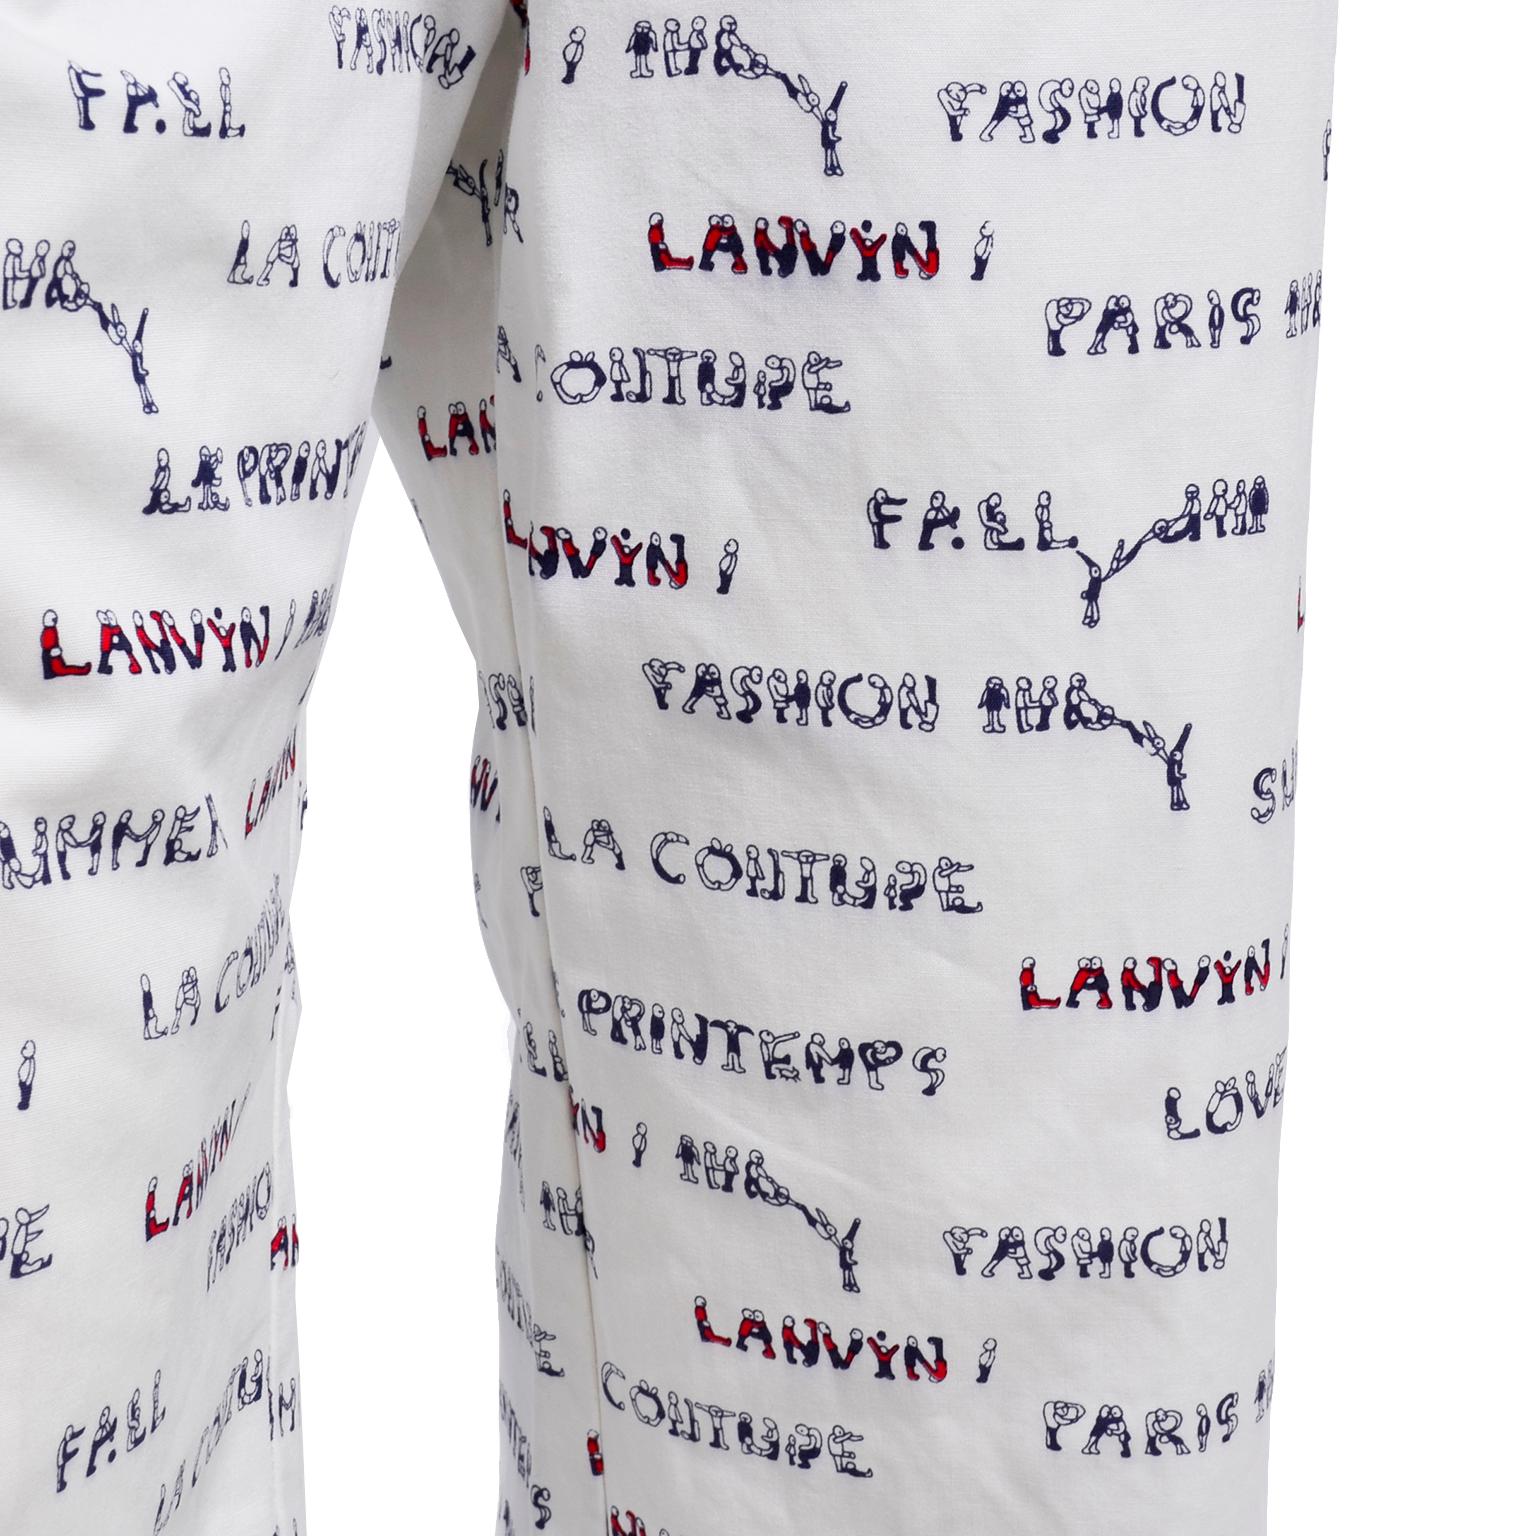 Lanvin Paris Pants & Jacket Vintage Monogram Fashion Acrobat Letters print Suit 2